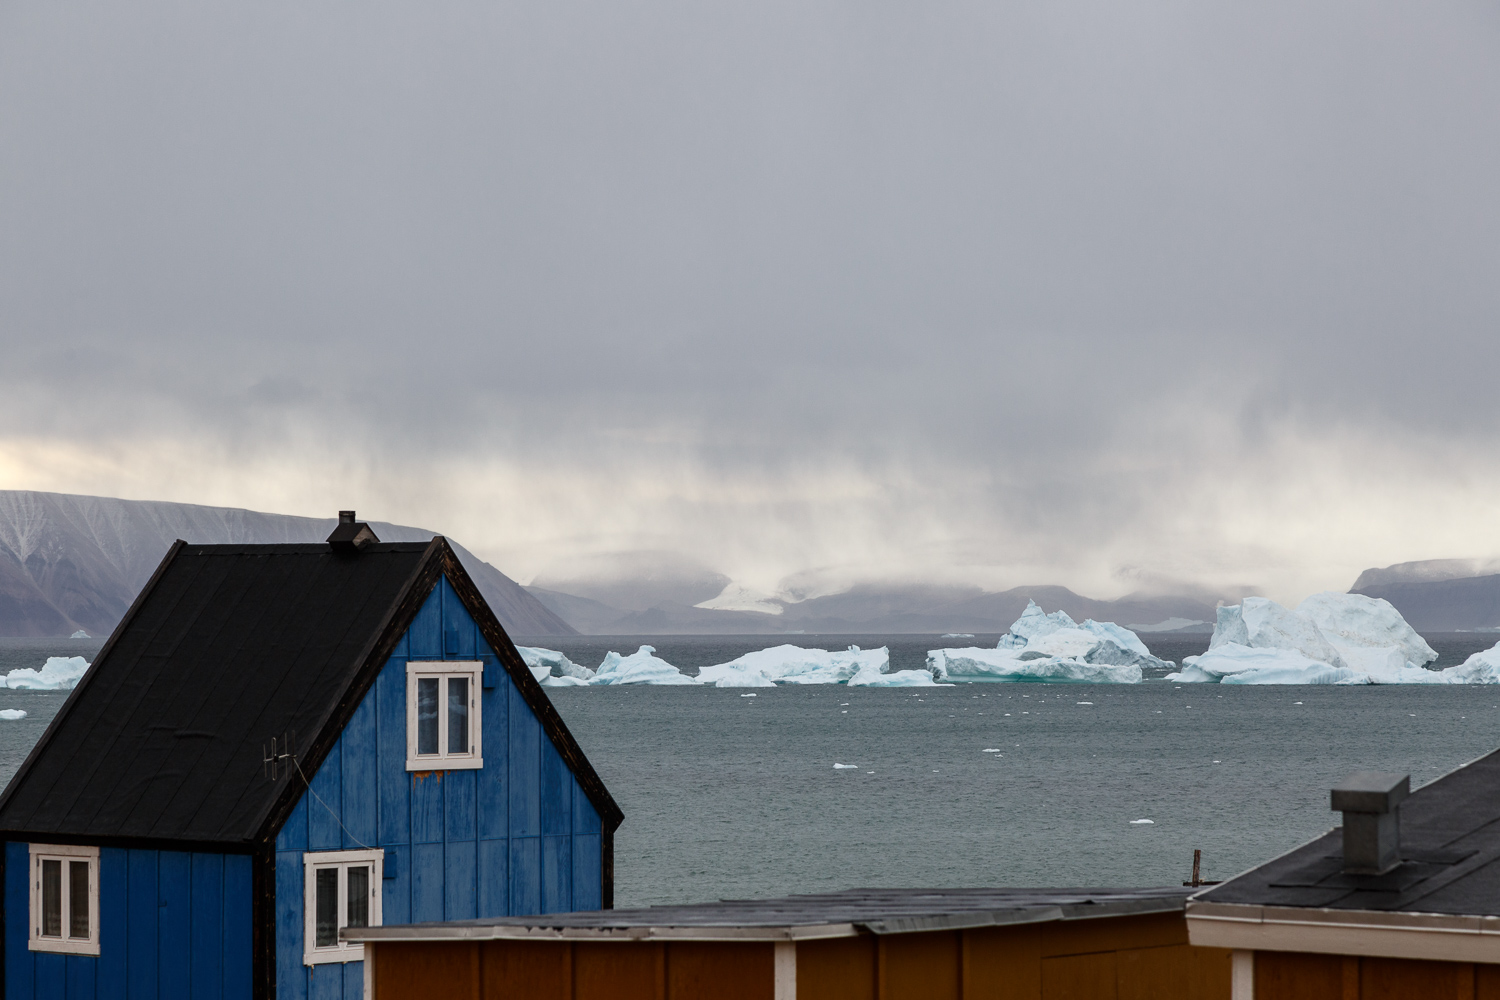 Blue House with Icebergs, Qaanaaq